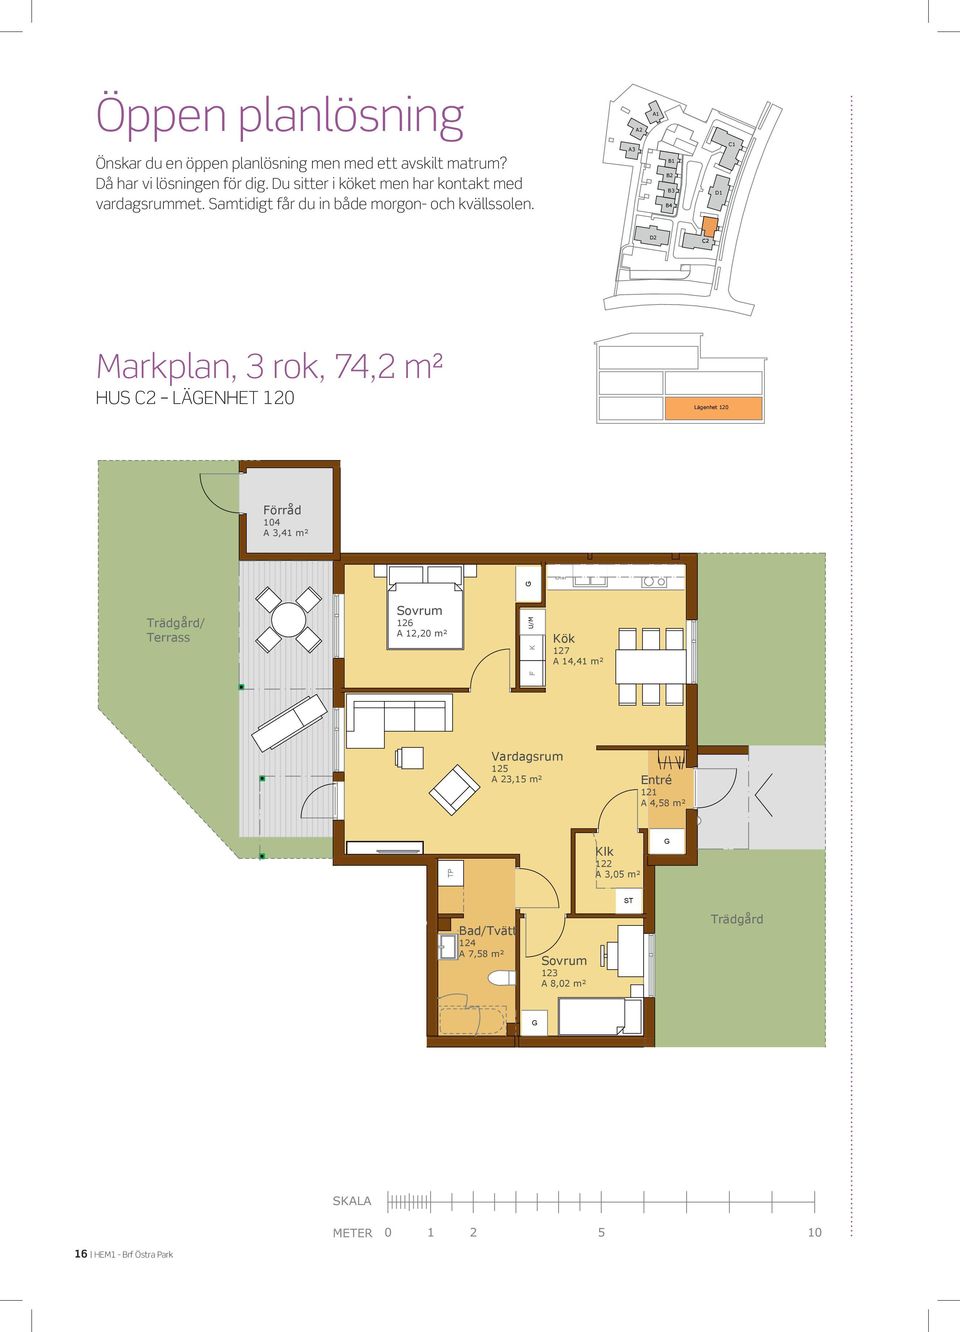 Önskar du en öppen planlösning men A,8 m² med ett avskilt matrum? Då har vi lösningen för dig. A 8,0 m² RO A, m² Du sitter i köket men har kontakt med vardagsrummet.